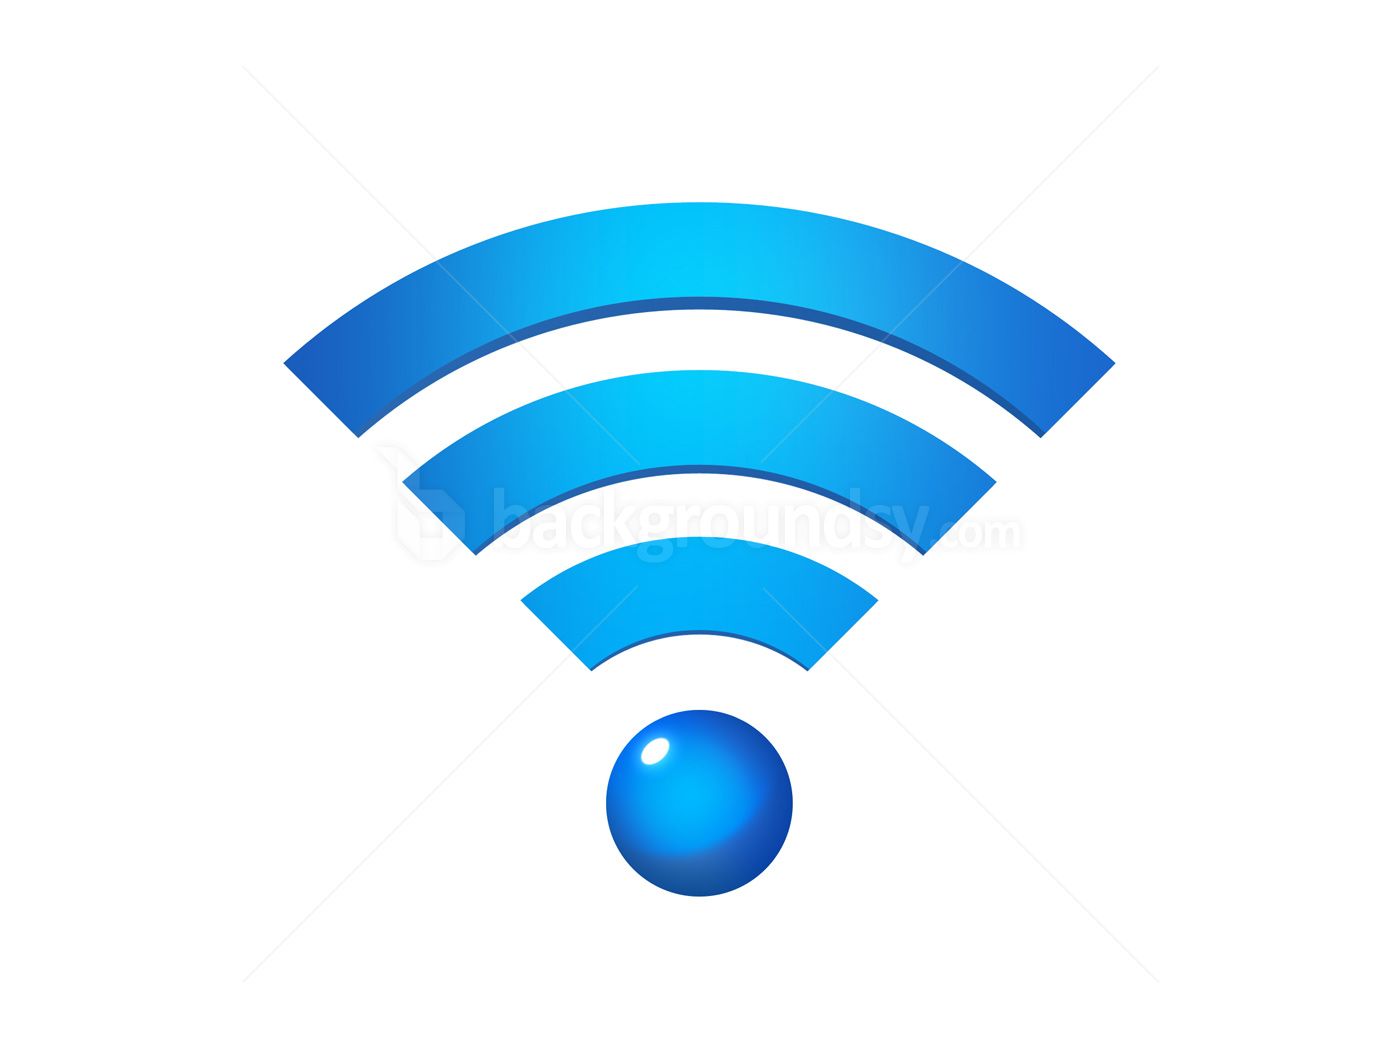 Wireless Network Background. Cartoon